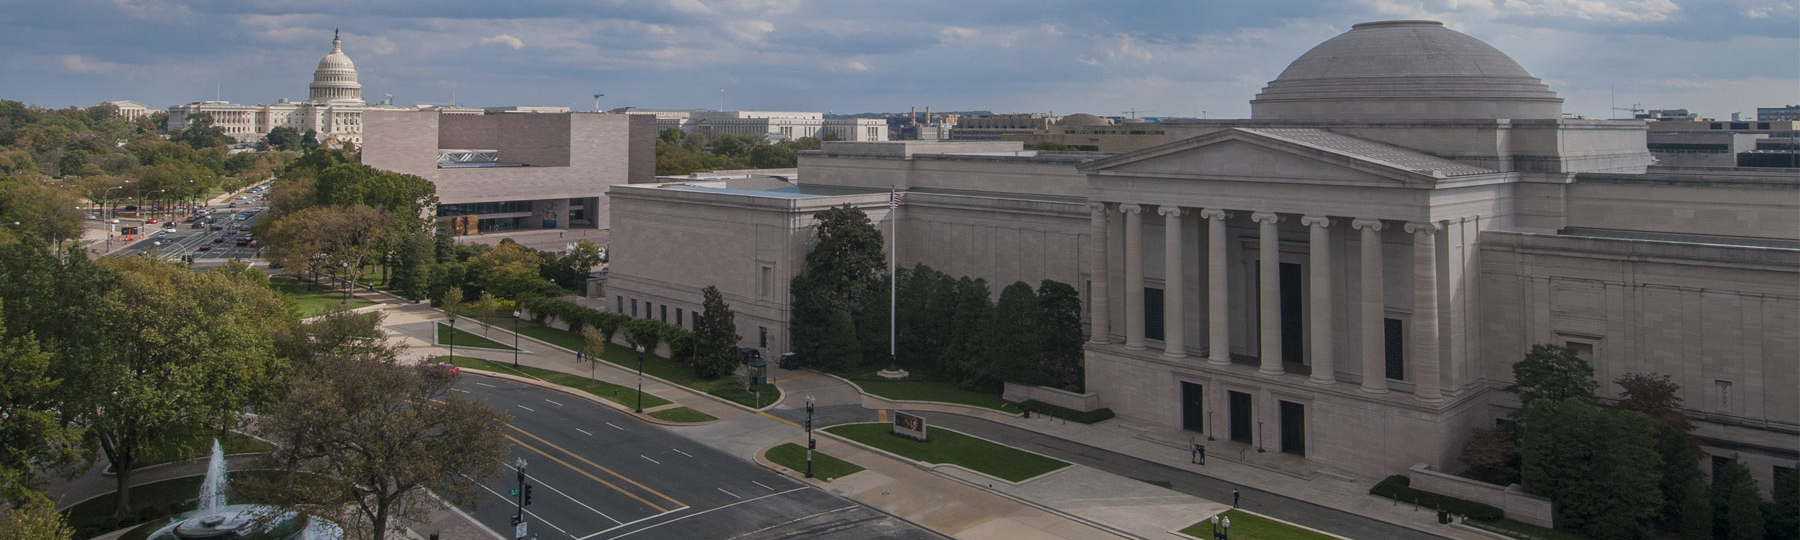 Luftaufnahme der National Gallery of Art von Ost- und Westgebäuden